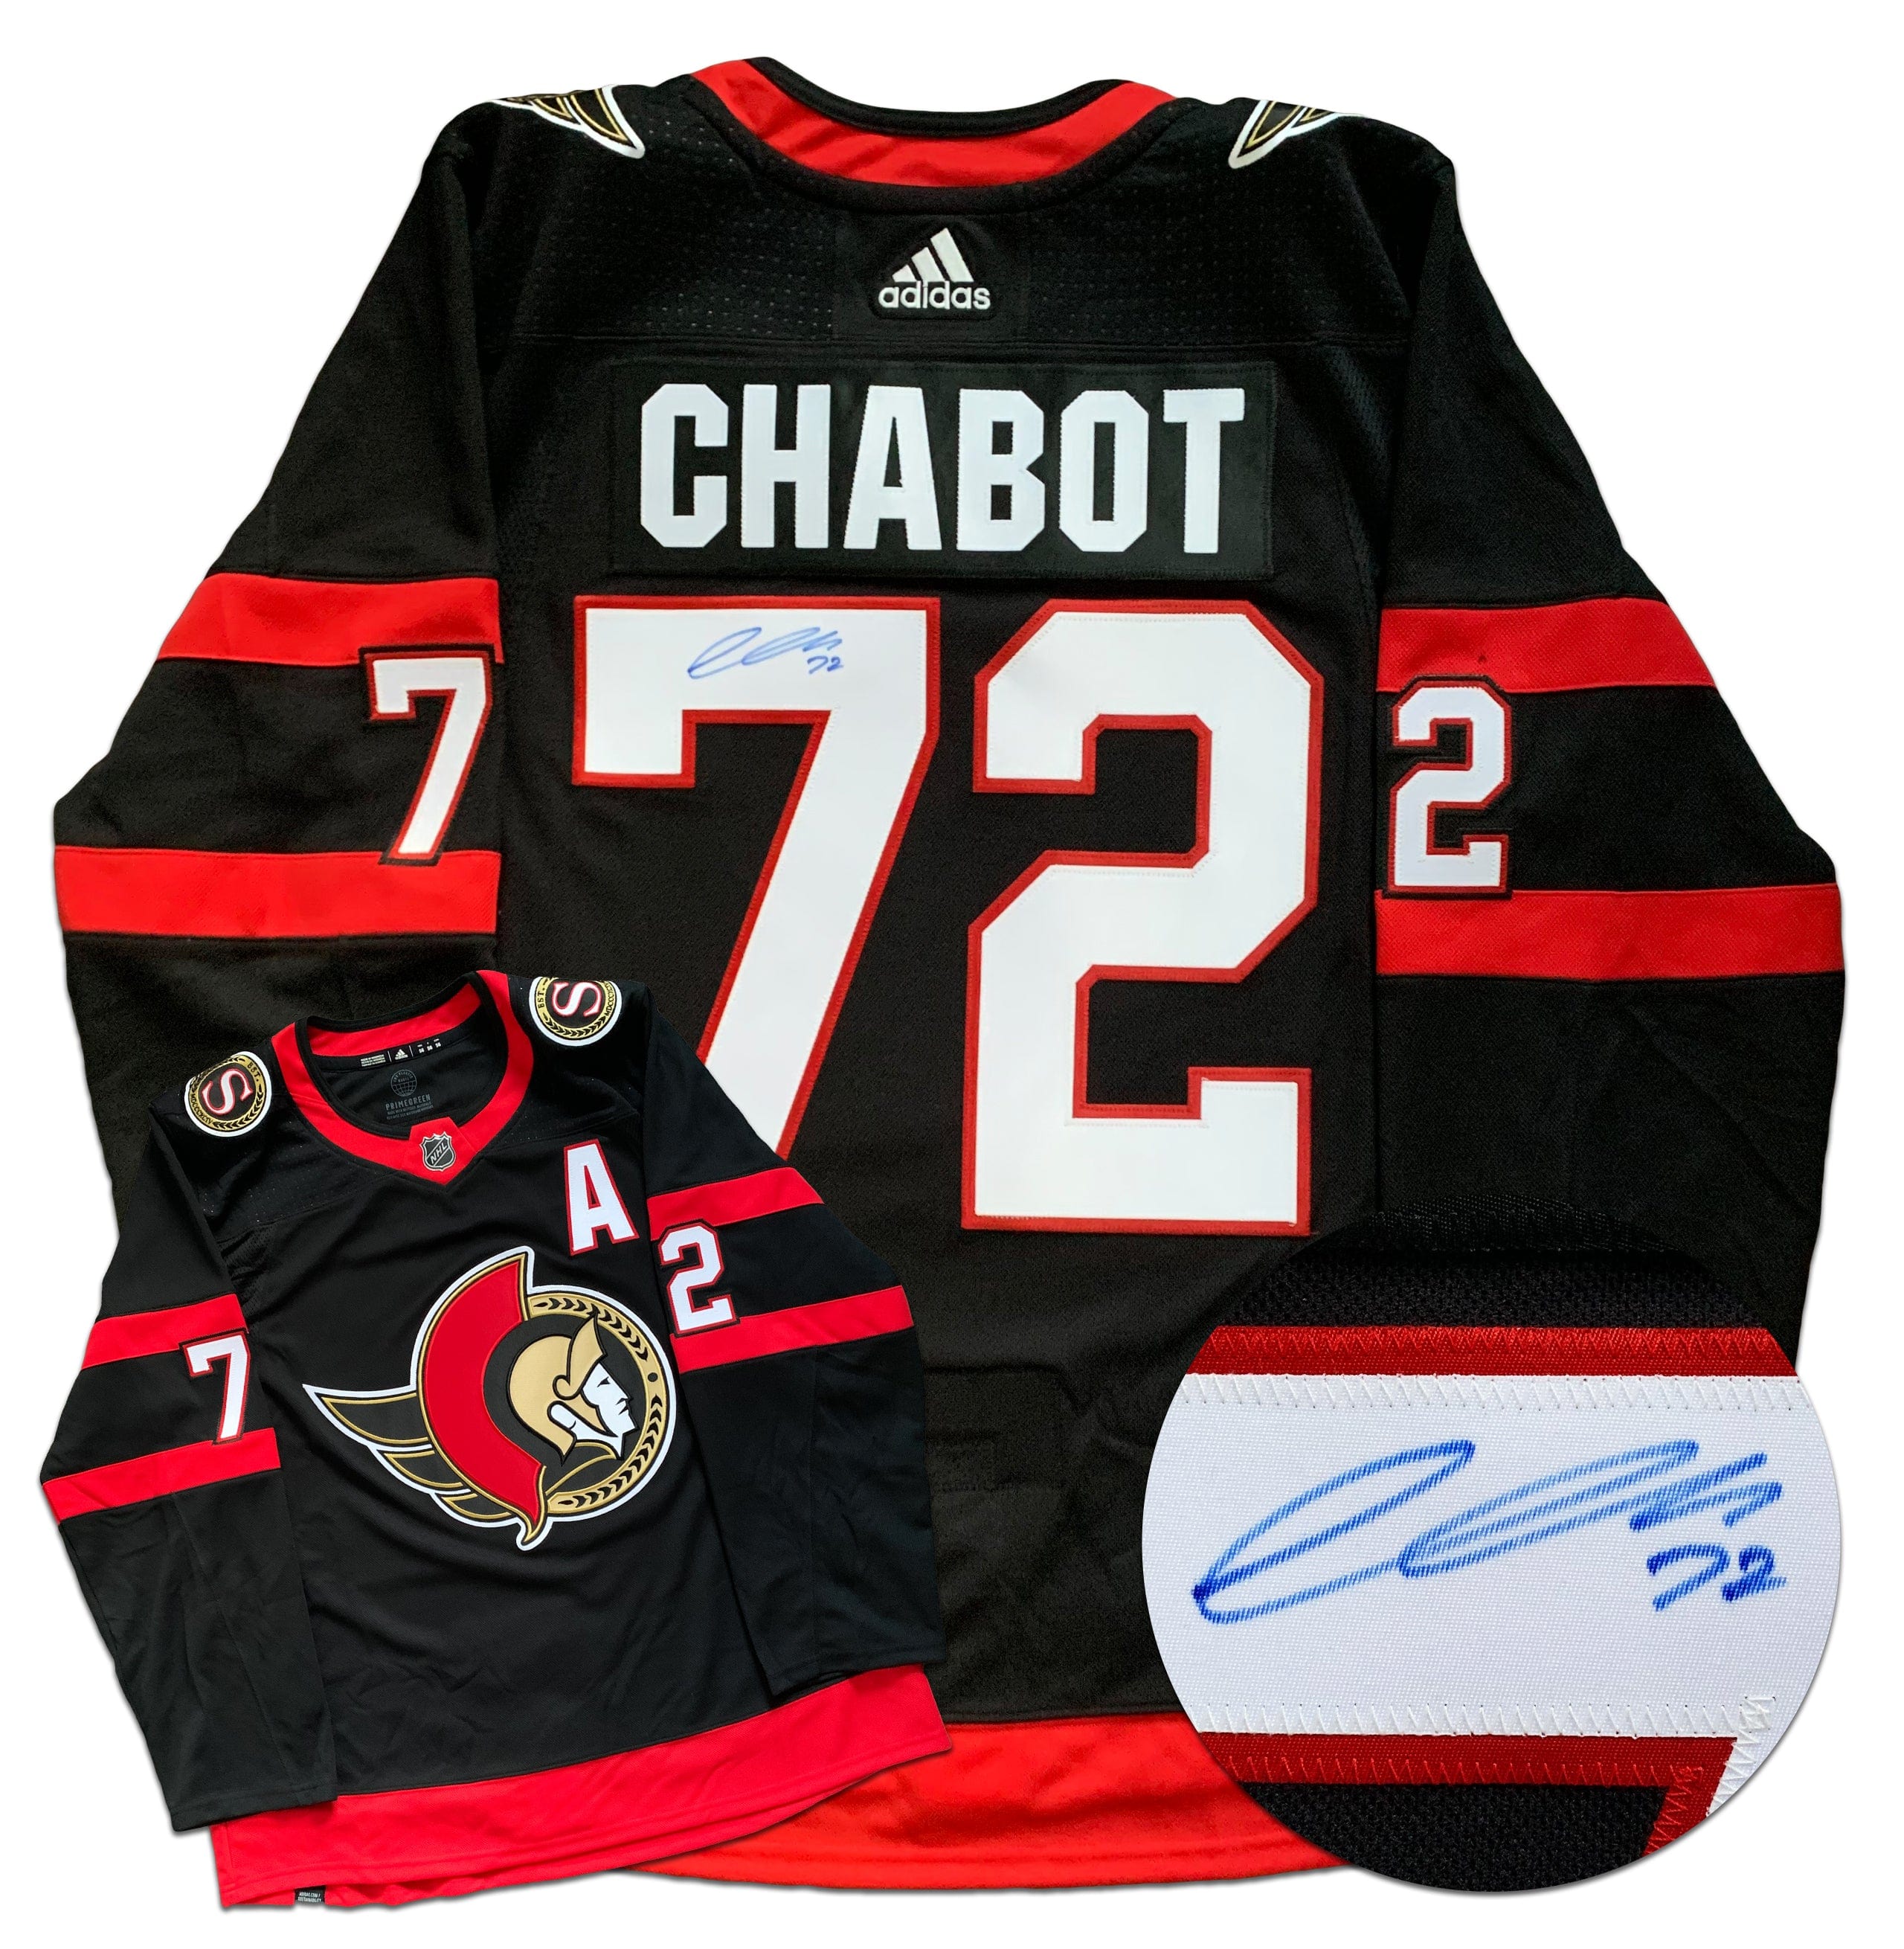 Thomas Chabot Ottawa Senators Autographed Adidas Jersey